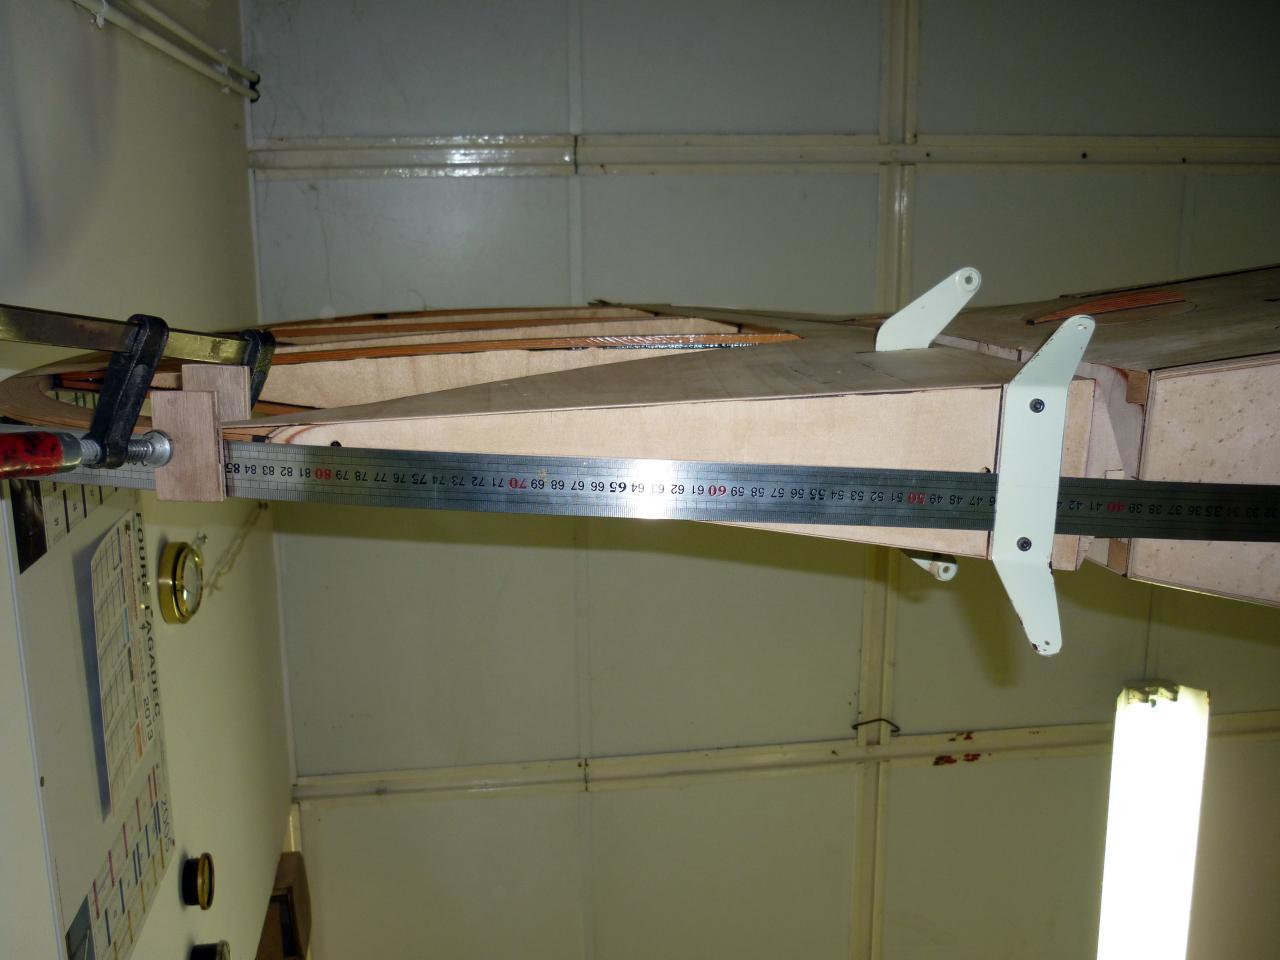 Alignement de la gouverne de direction sur l'axe du fuselage.